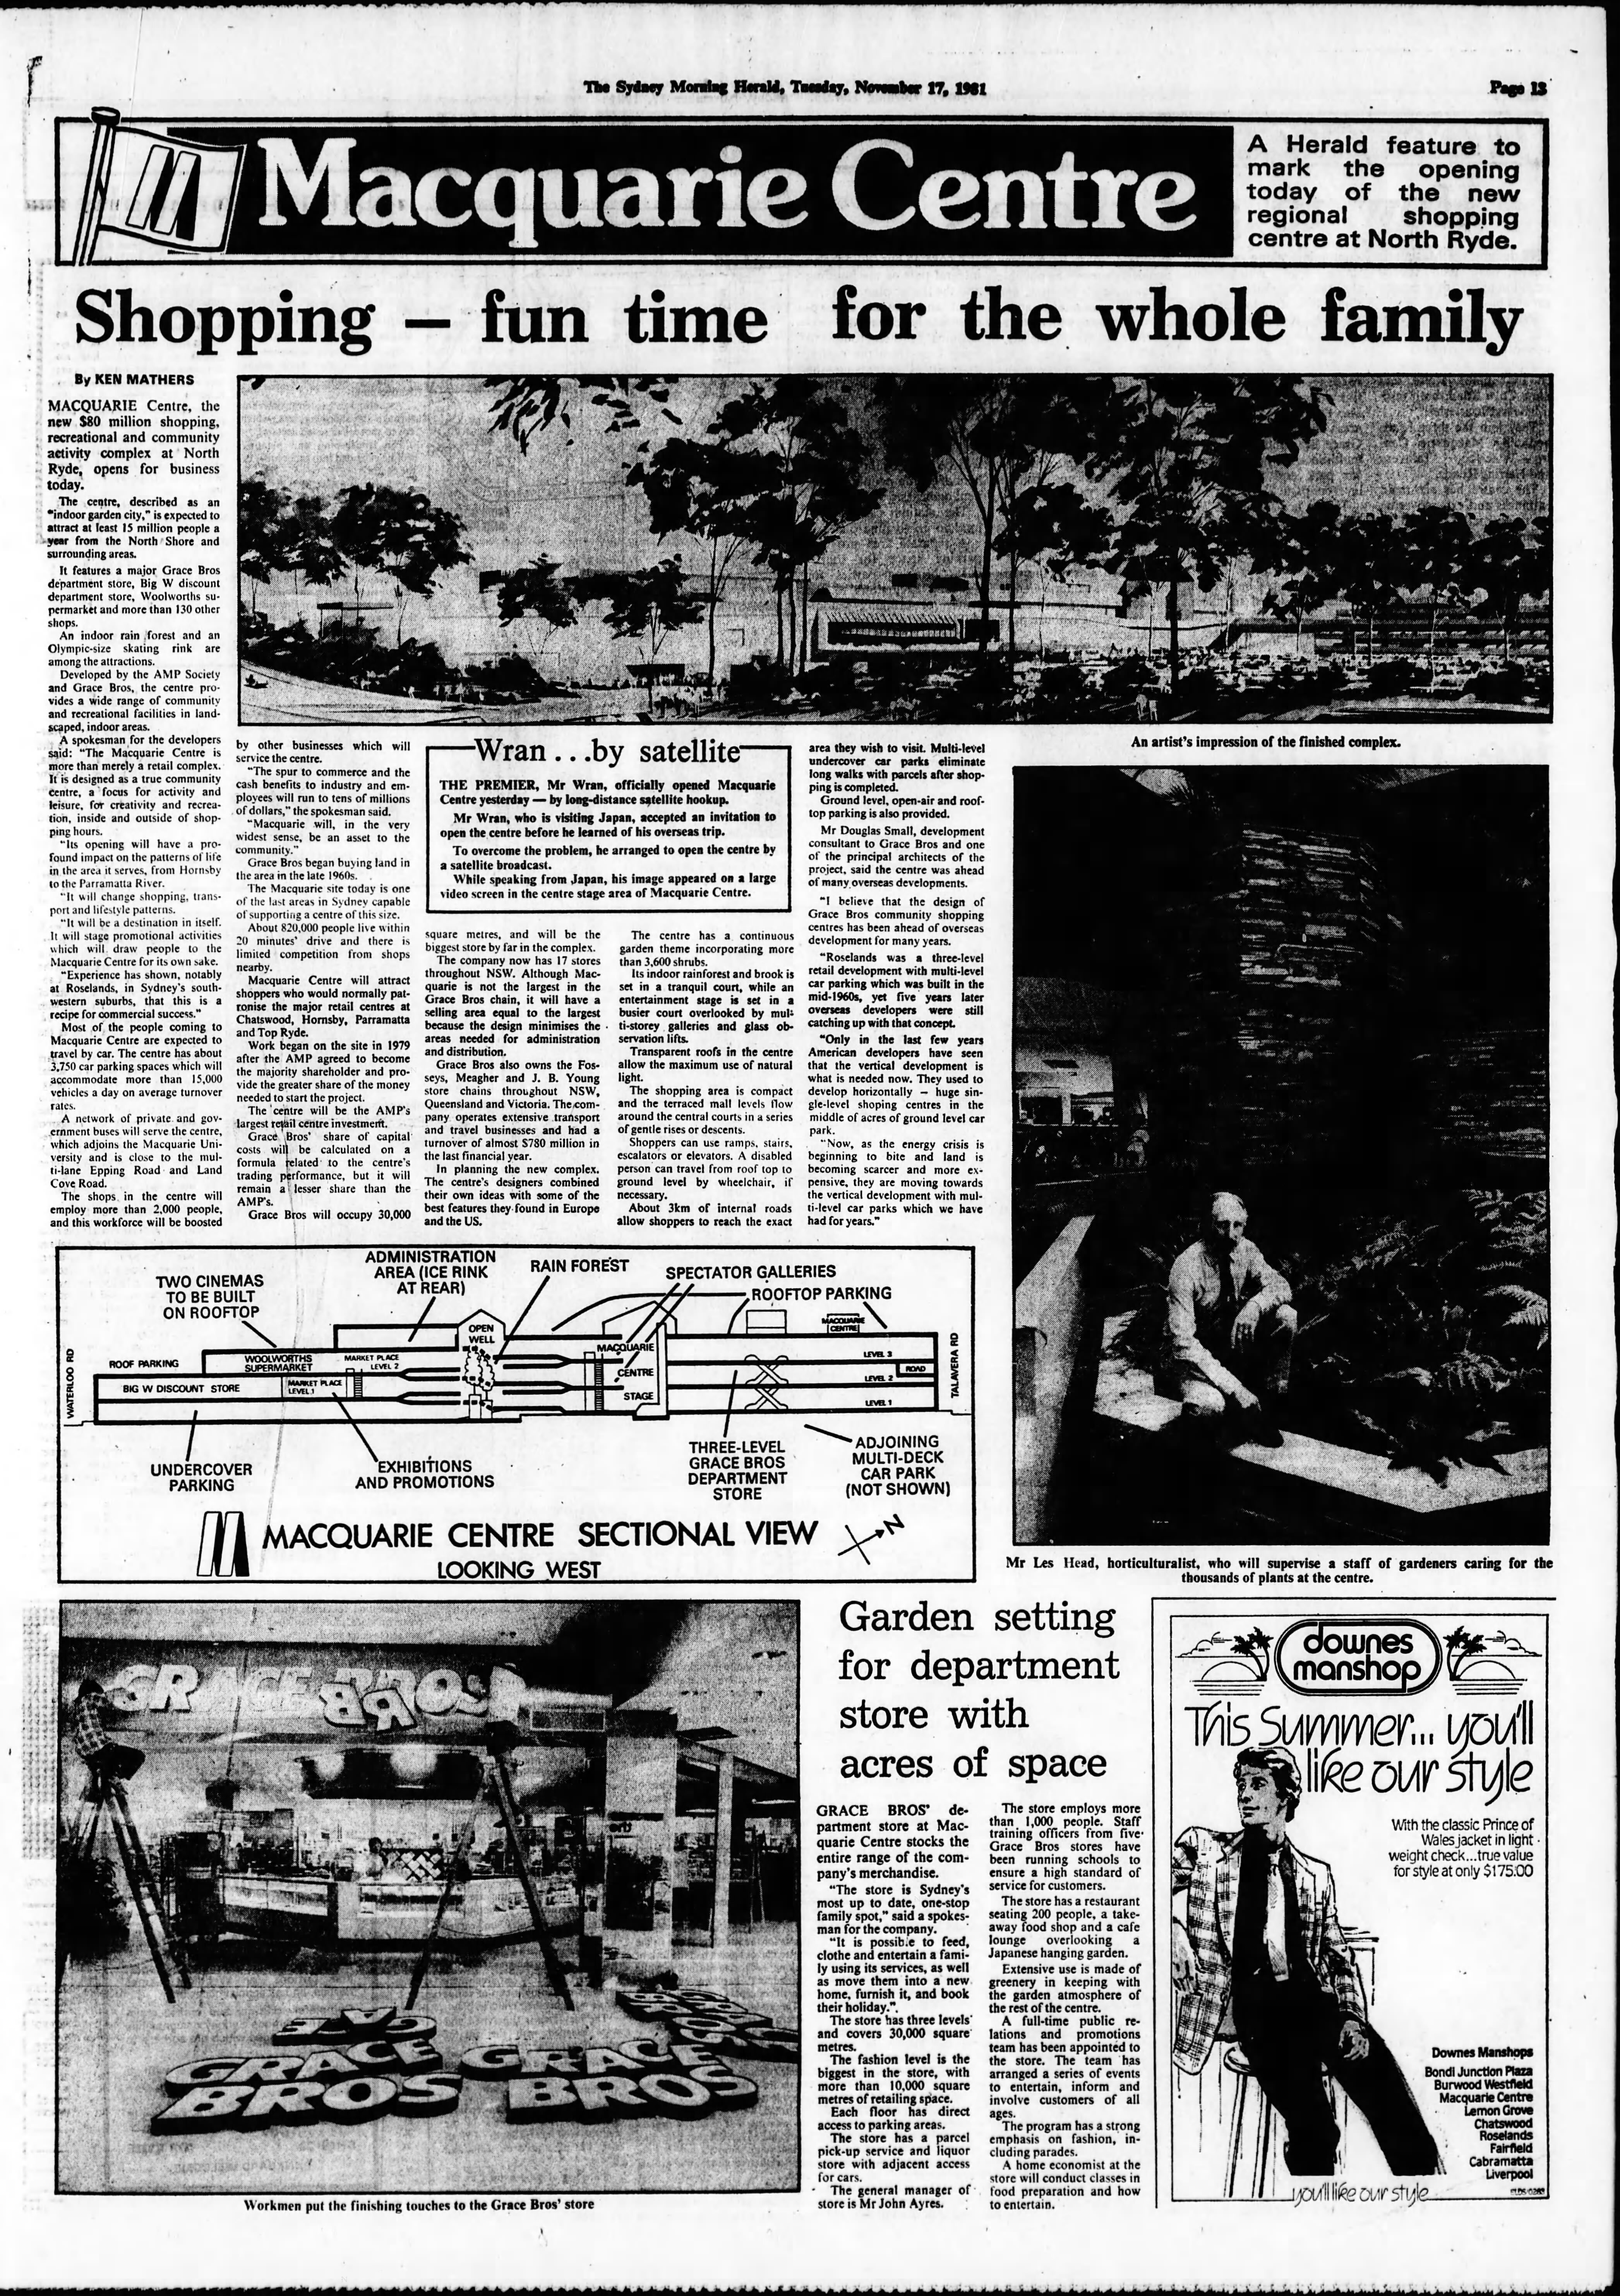 Macquarie Centre Opens November 17 1981 SMH (1)